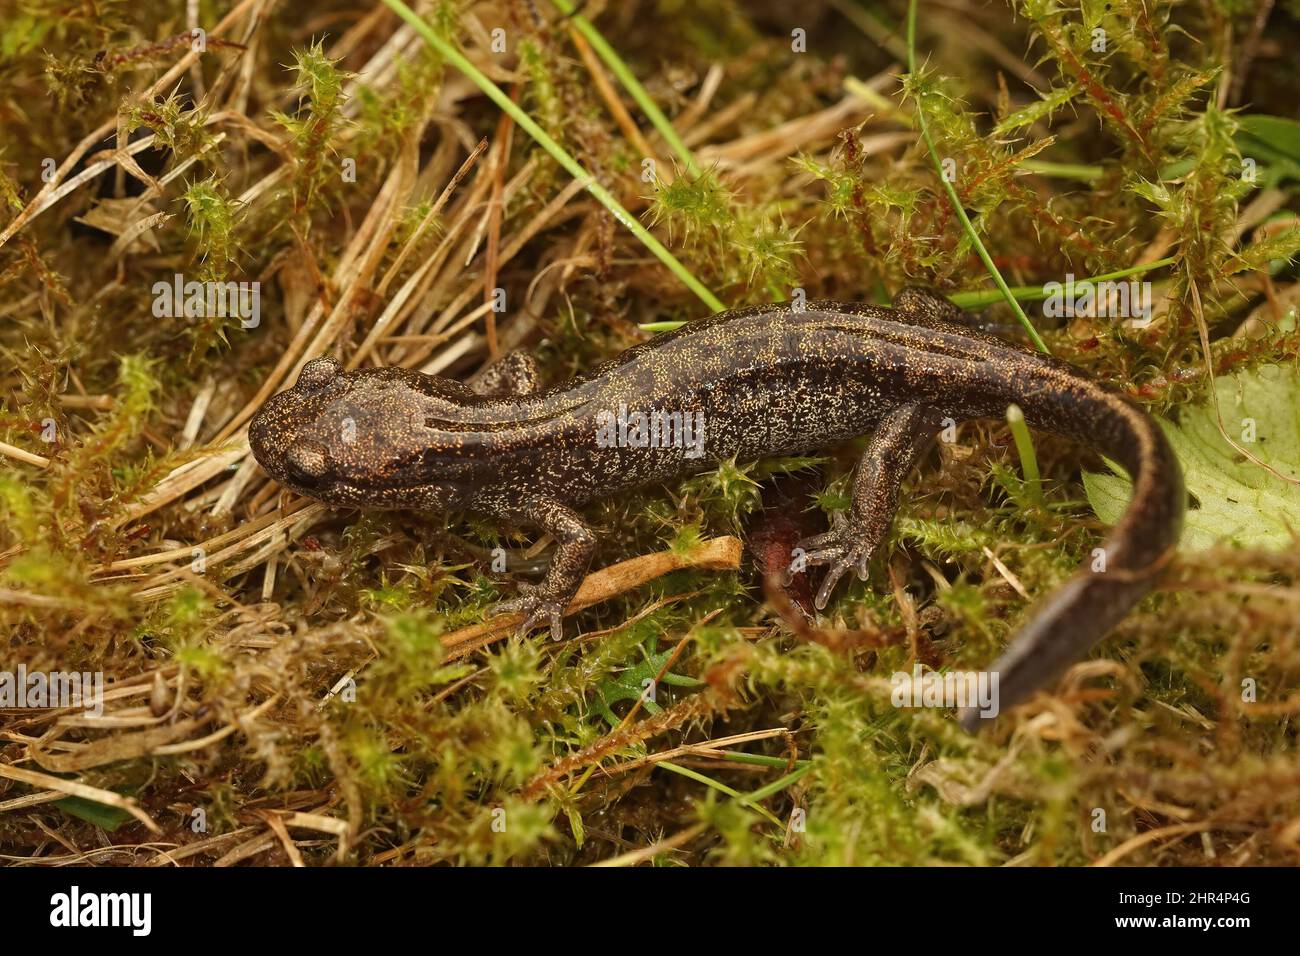 Closeup on a brassy colored juvenile o the Hokkaido salamander, Hynobius retardatus Stock Photo